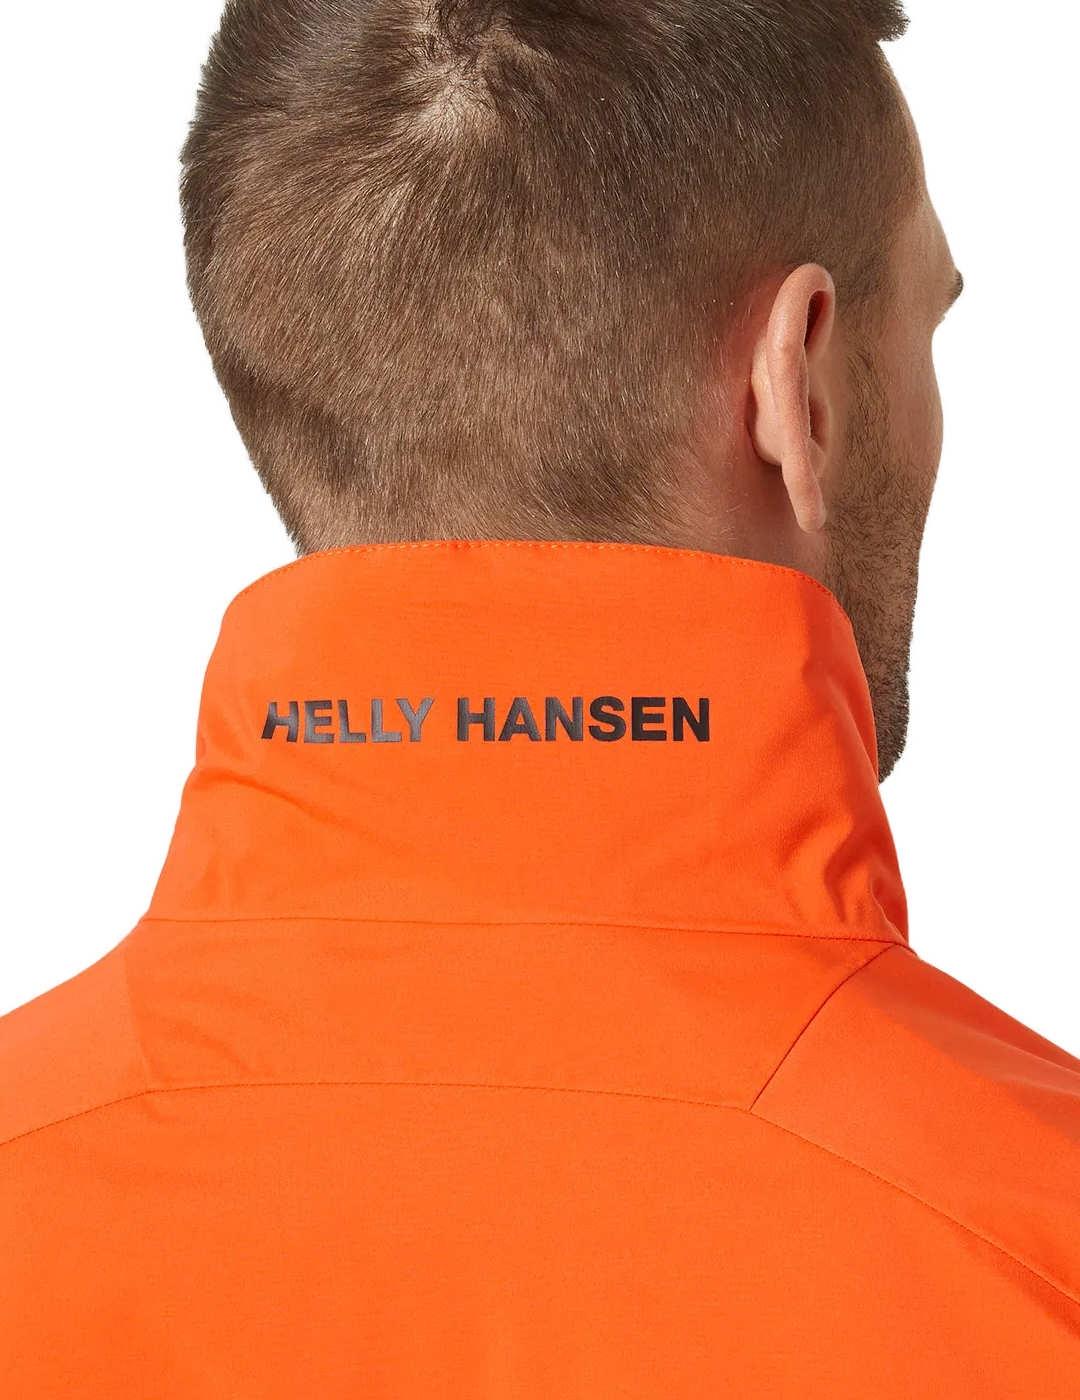 Chaqueta Helly Hansen Racing naranja impermeable de hombre